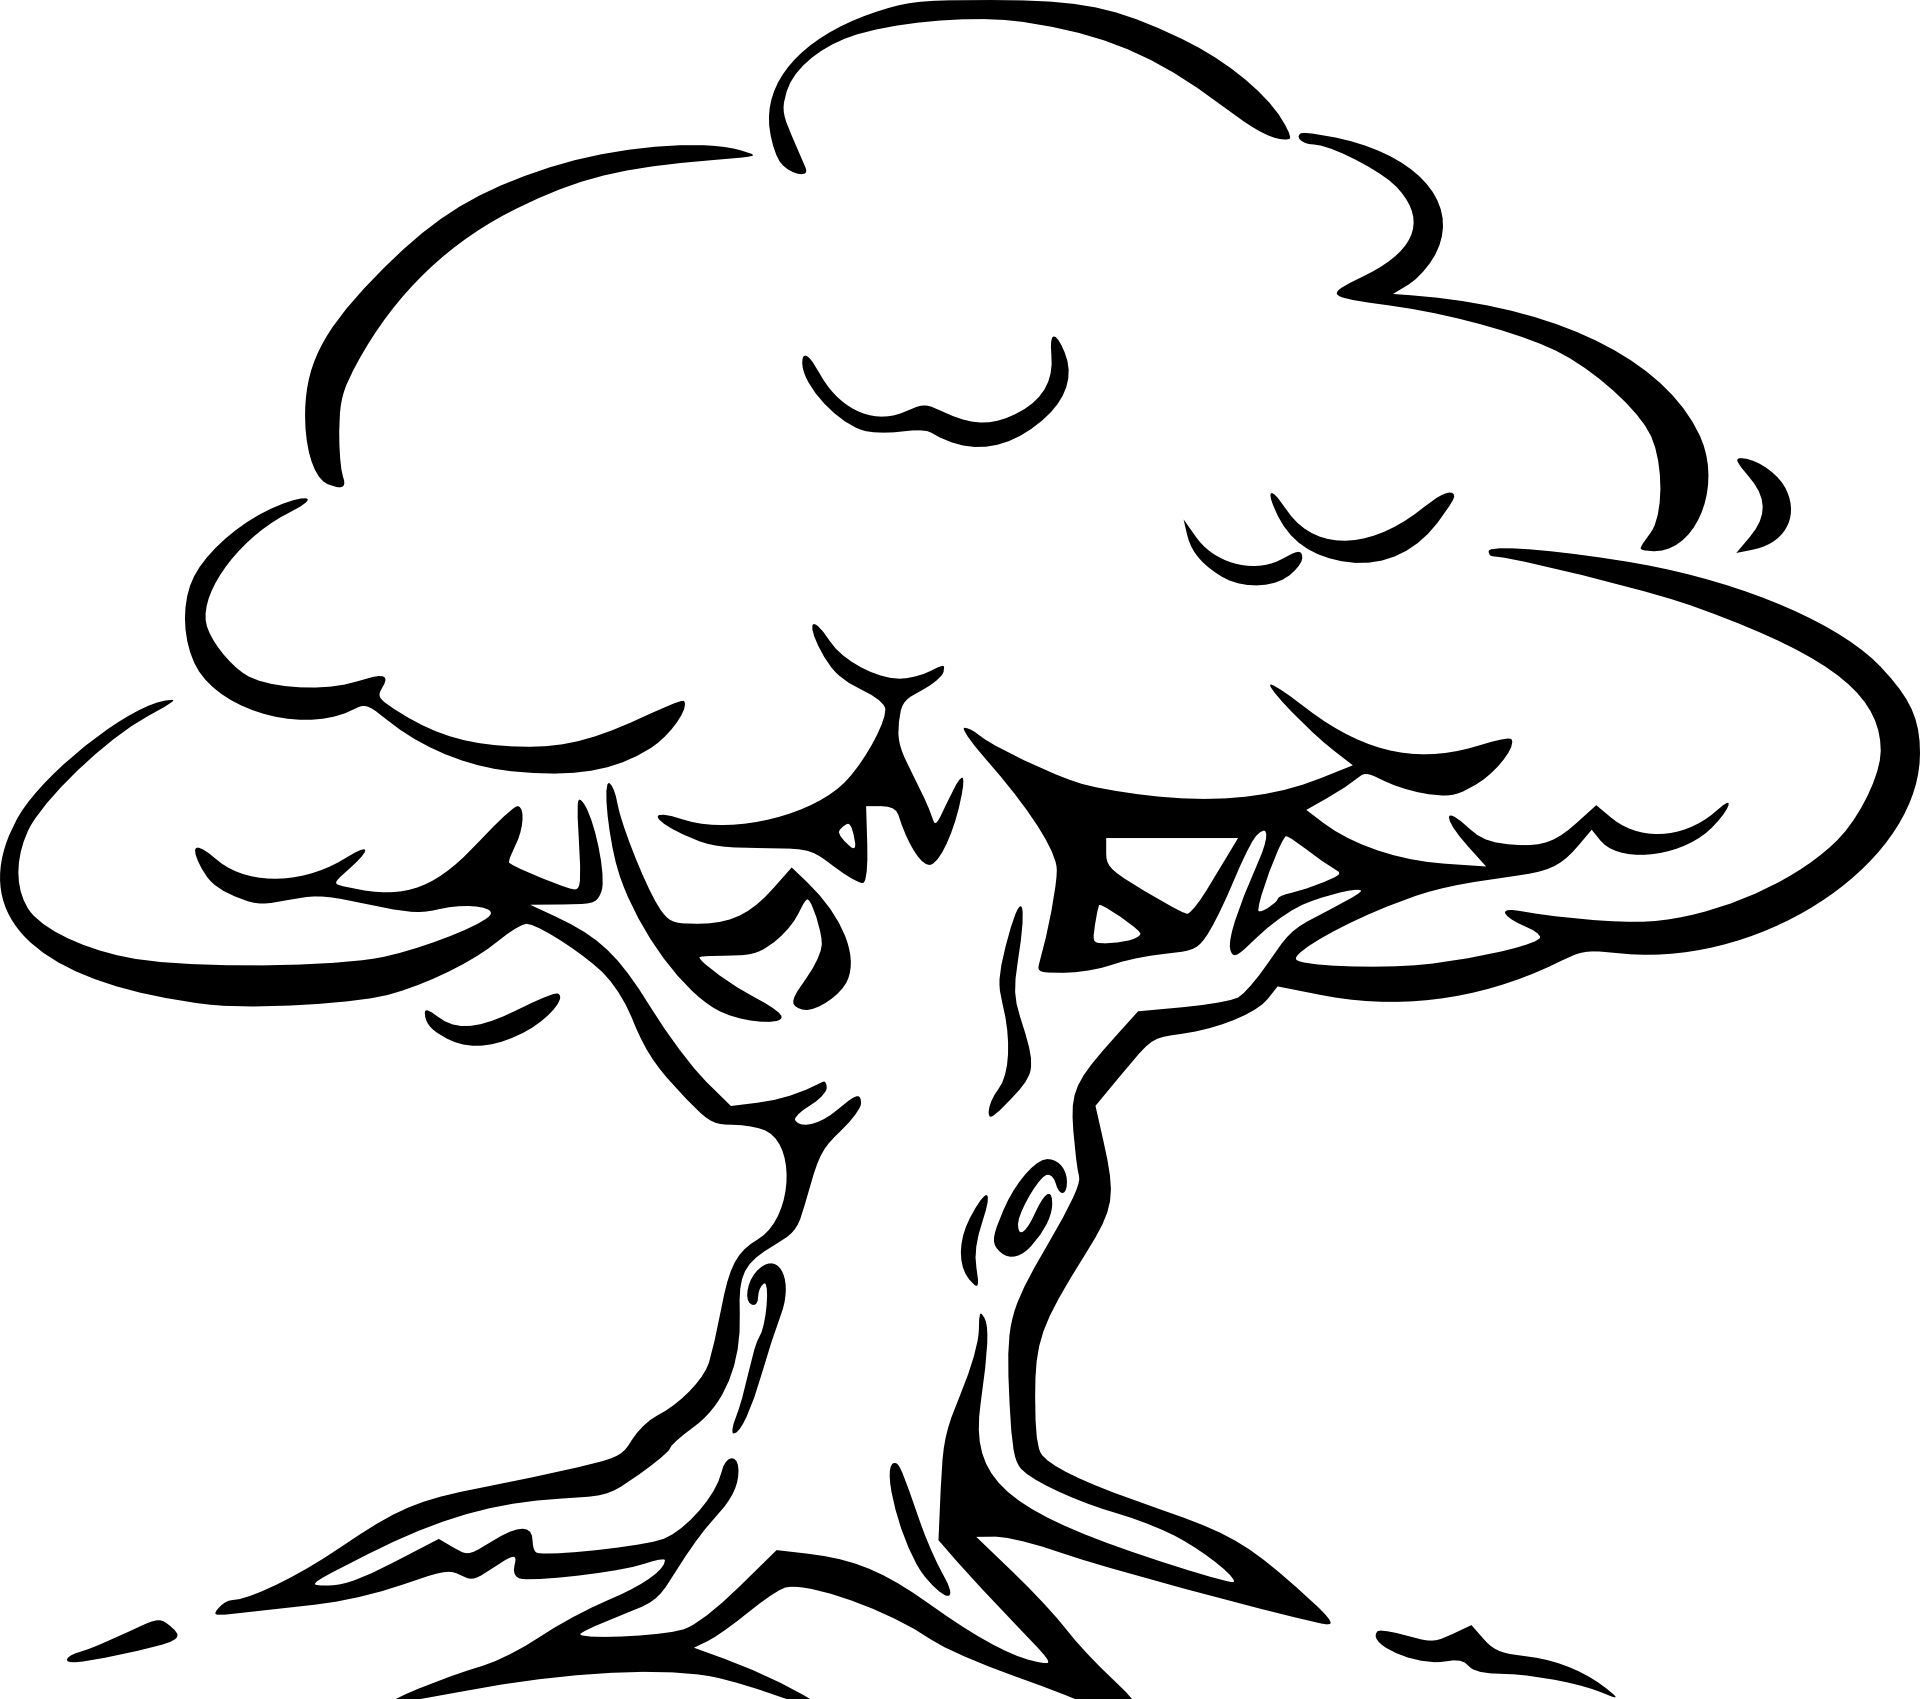 Malvorlage Baum Kostenlos | Ausmalbilder, Ausmalen, Baummalerei bei Herbstbaum Zum Ausmalen